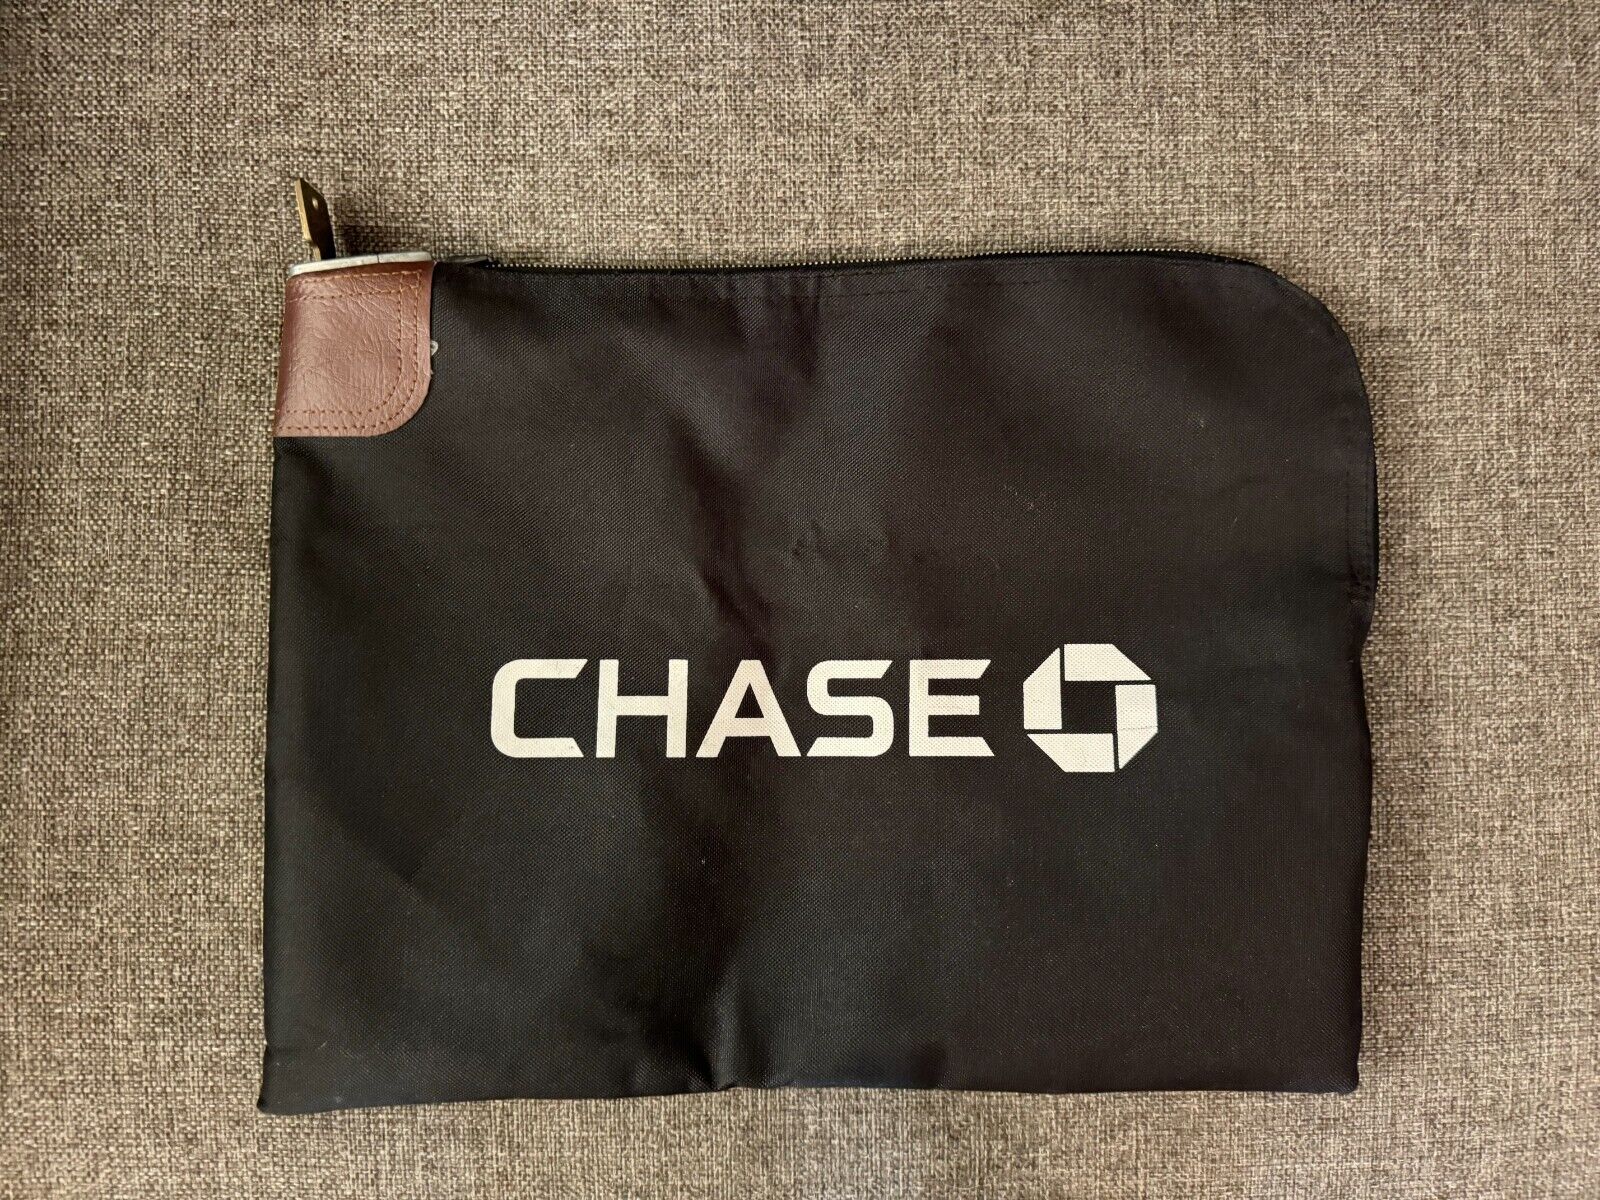 Chase Bank Arco 7 Rifkin Co. Lock Bank Deposit Bag With key